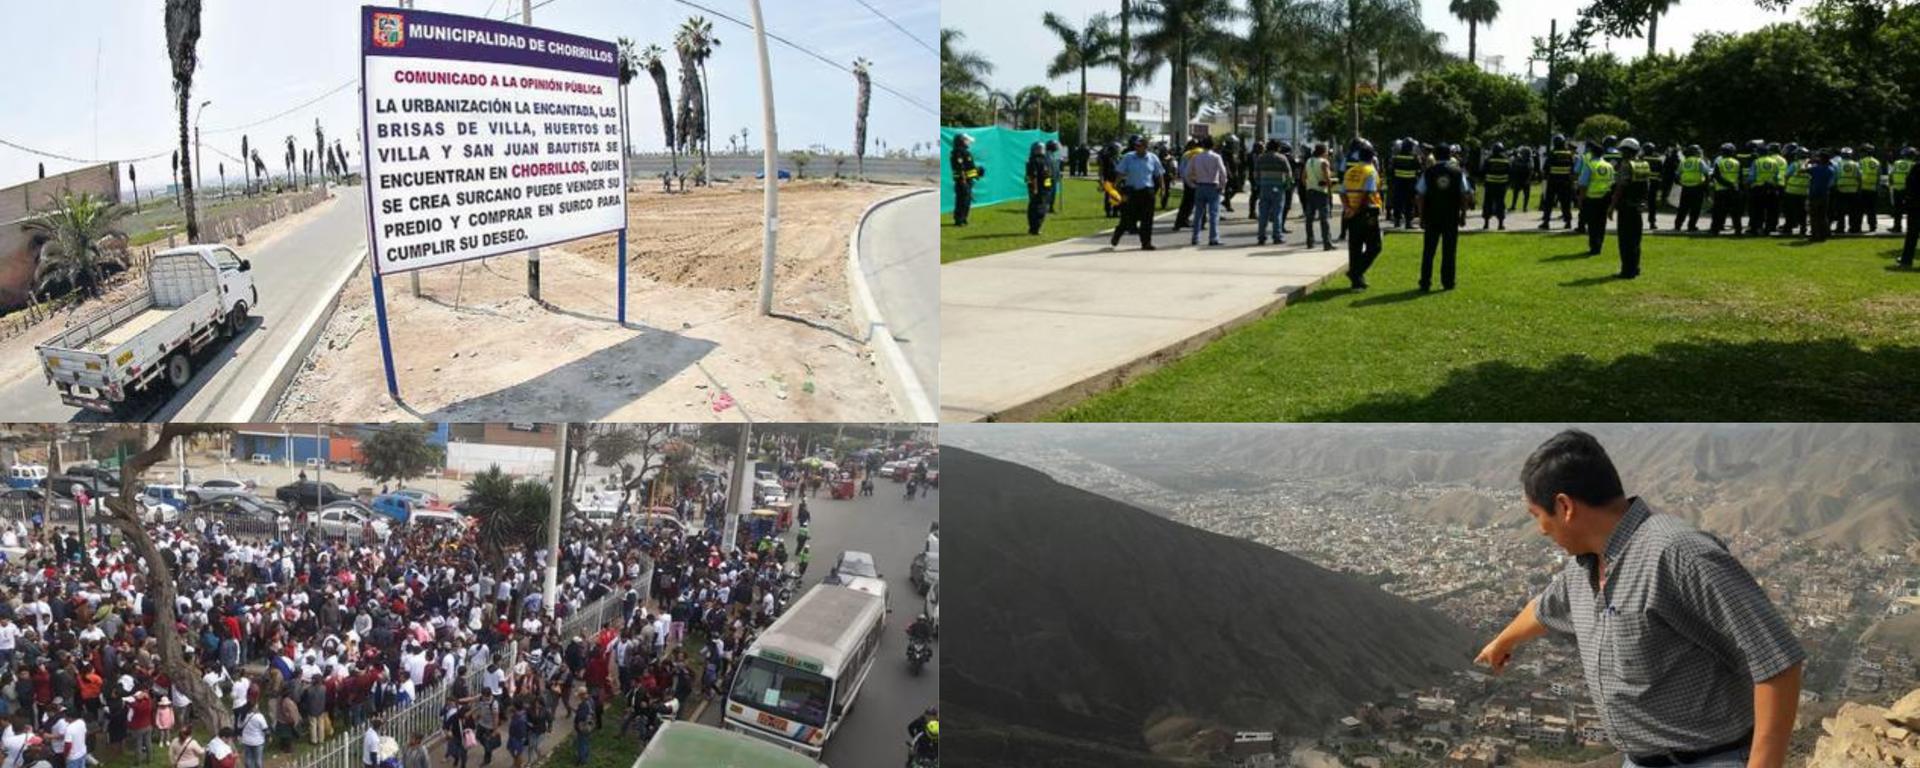 Lima: ¿cuáles son los distritos que han presentado conflictos territoriales alrededor de los años?